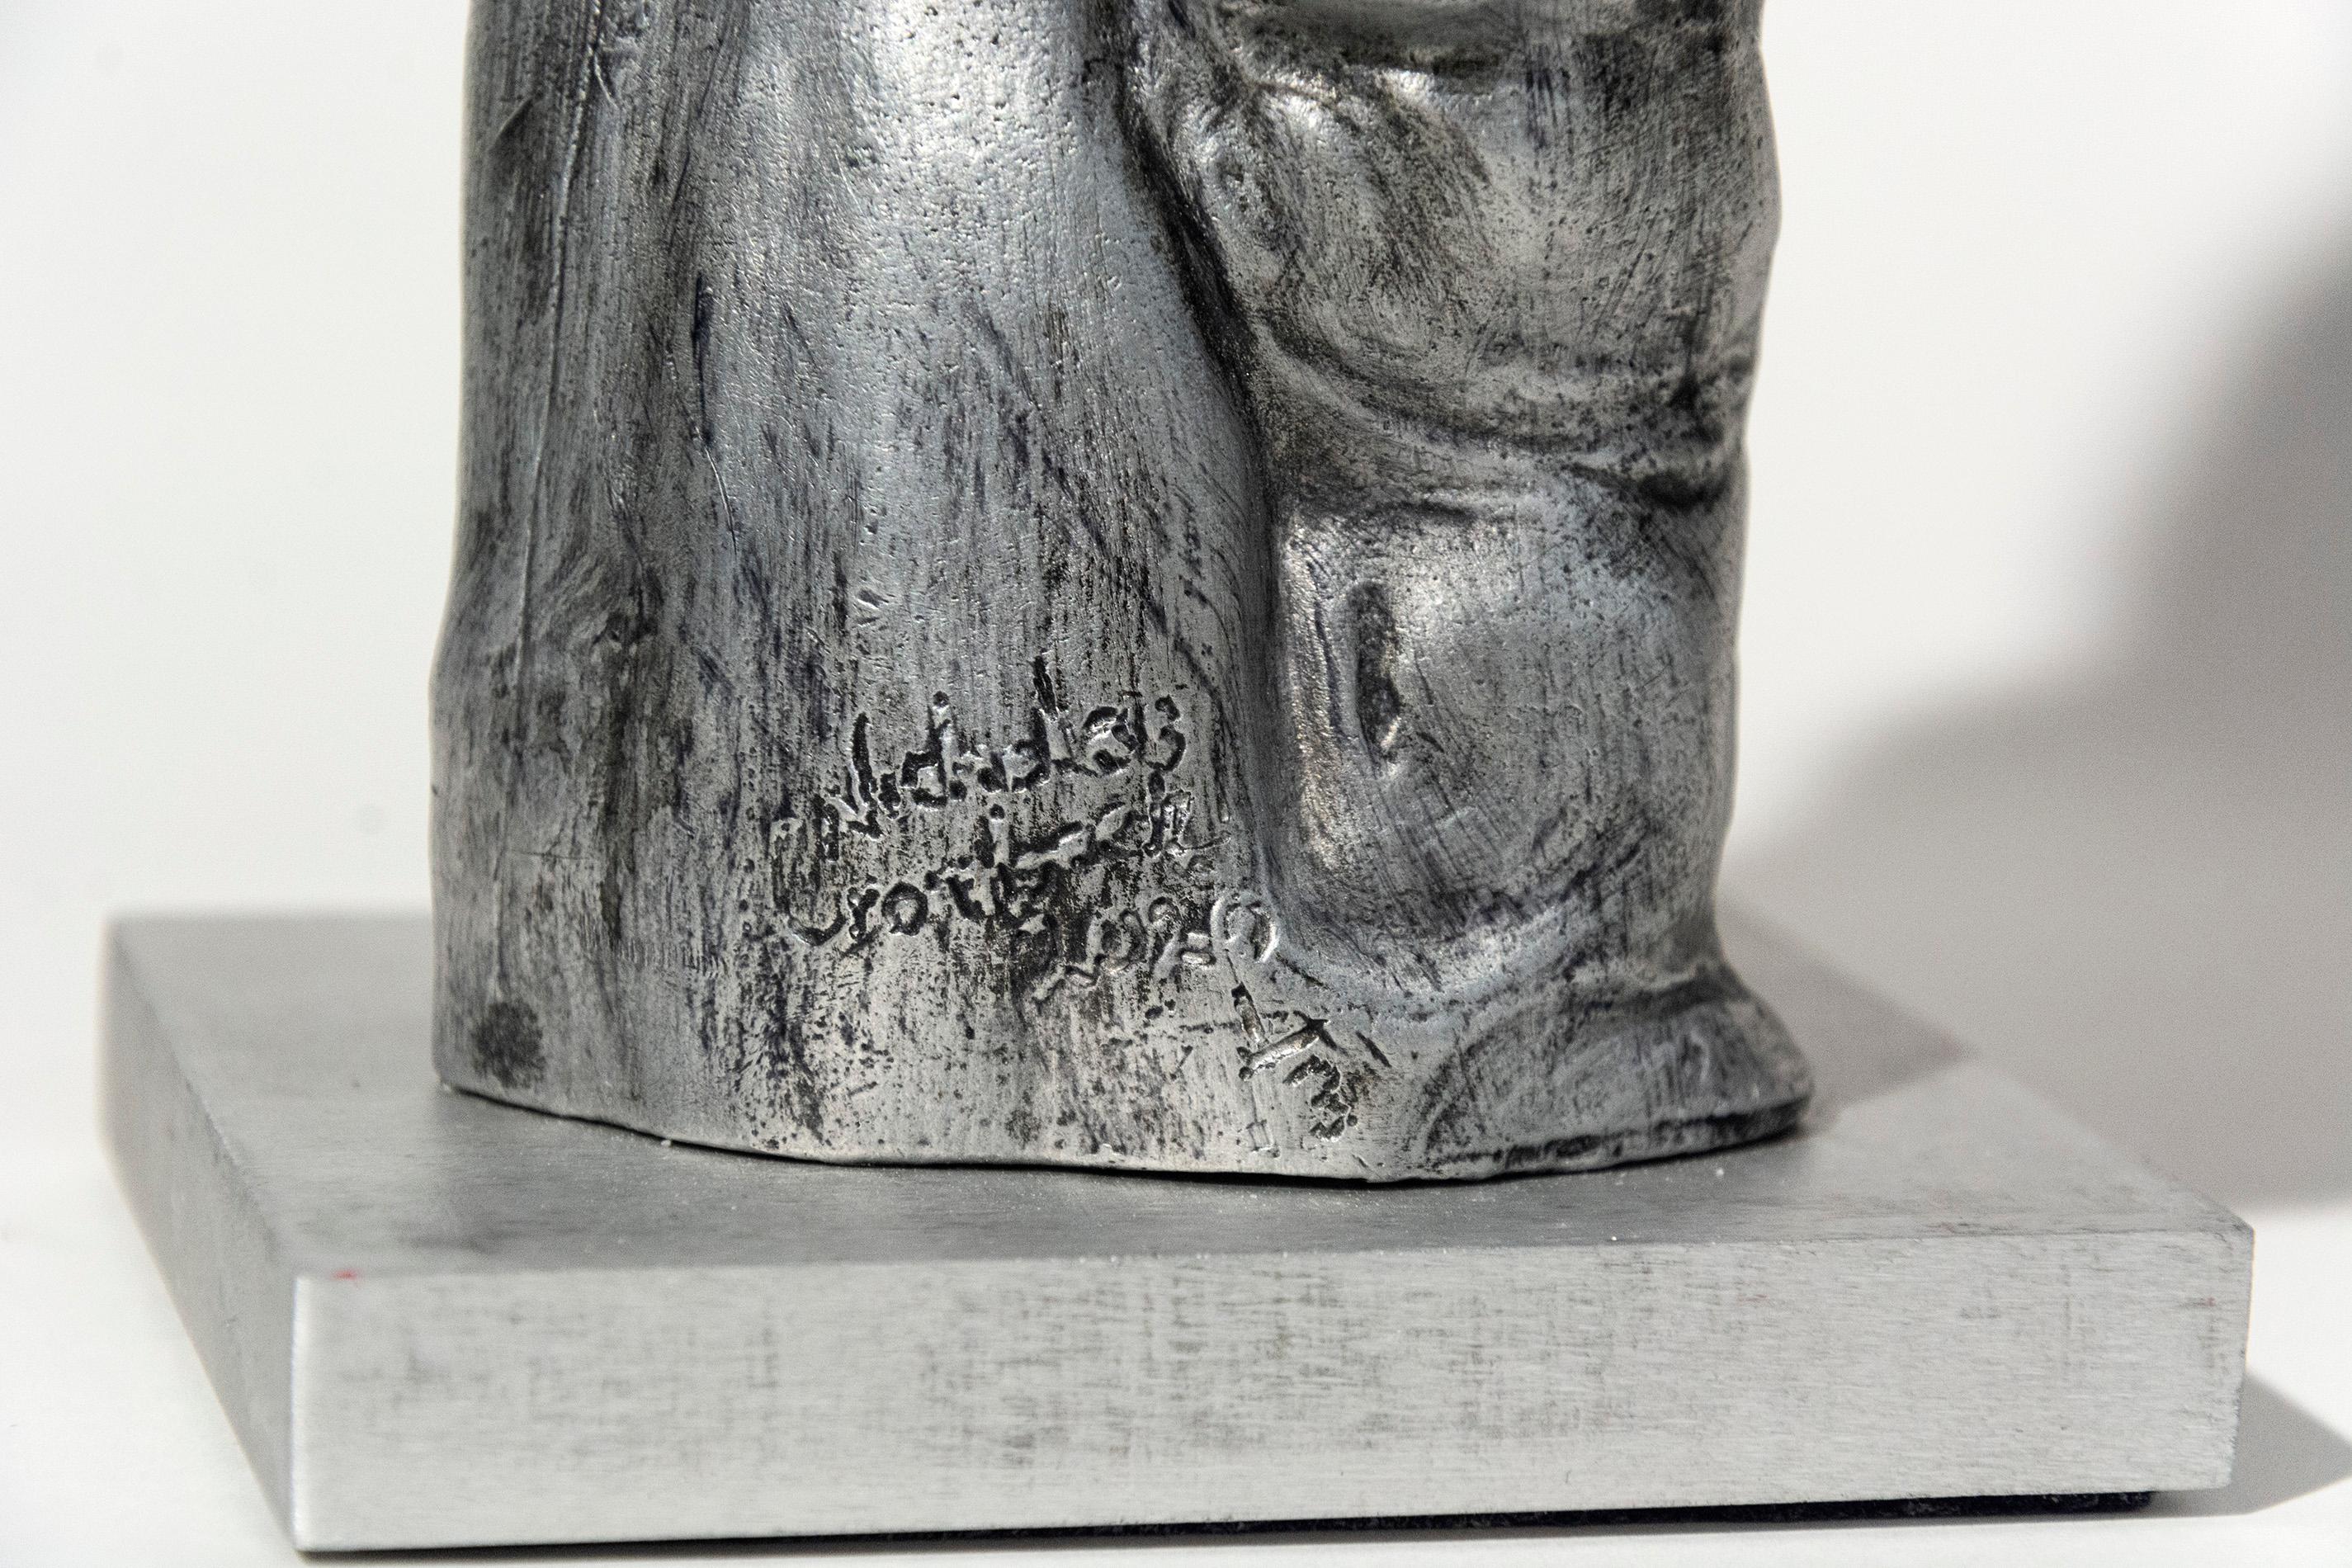 Diese aus Aluminium gegossene Skulptur eines männlichen Pfaus spiegelt das Hauptthema des Künstlers Nicholas Crombach wider: die Interaktion zwischen Mensch und Tier. Diese Skulptur ist die Nummer 1 aus einer Auflage von 3 Stück.

Nicholas Crombach